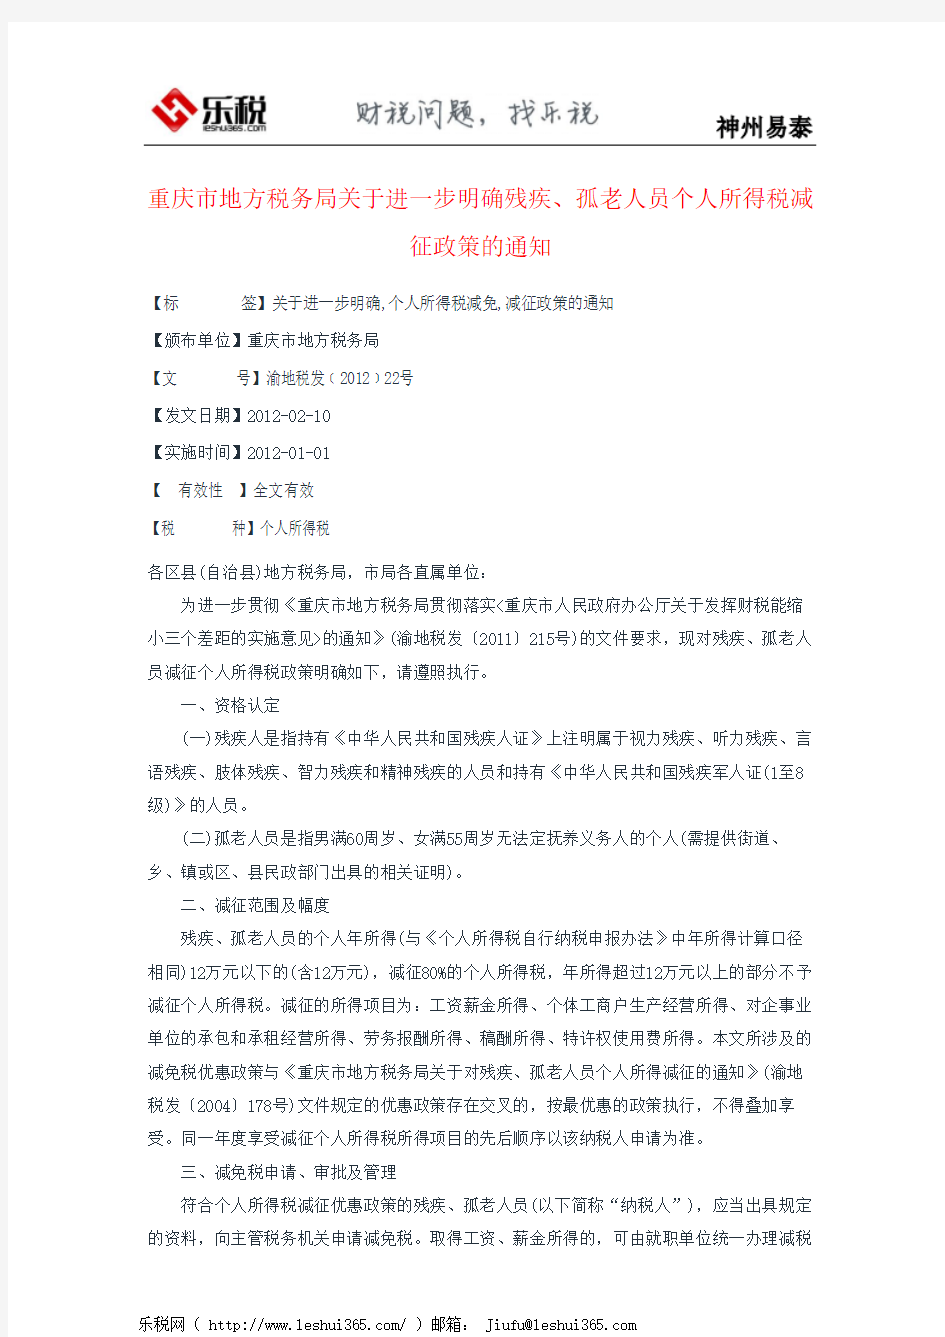 重庆市地方税务局关于进一步明确残疾、孤老人员个人所得税减征政